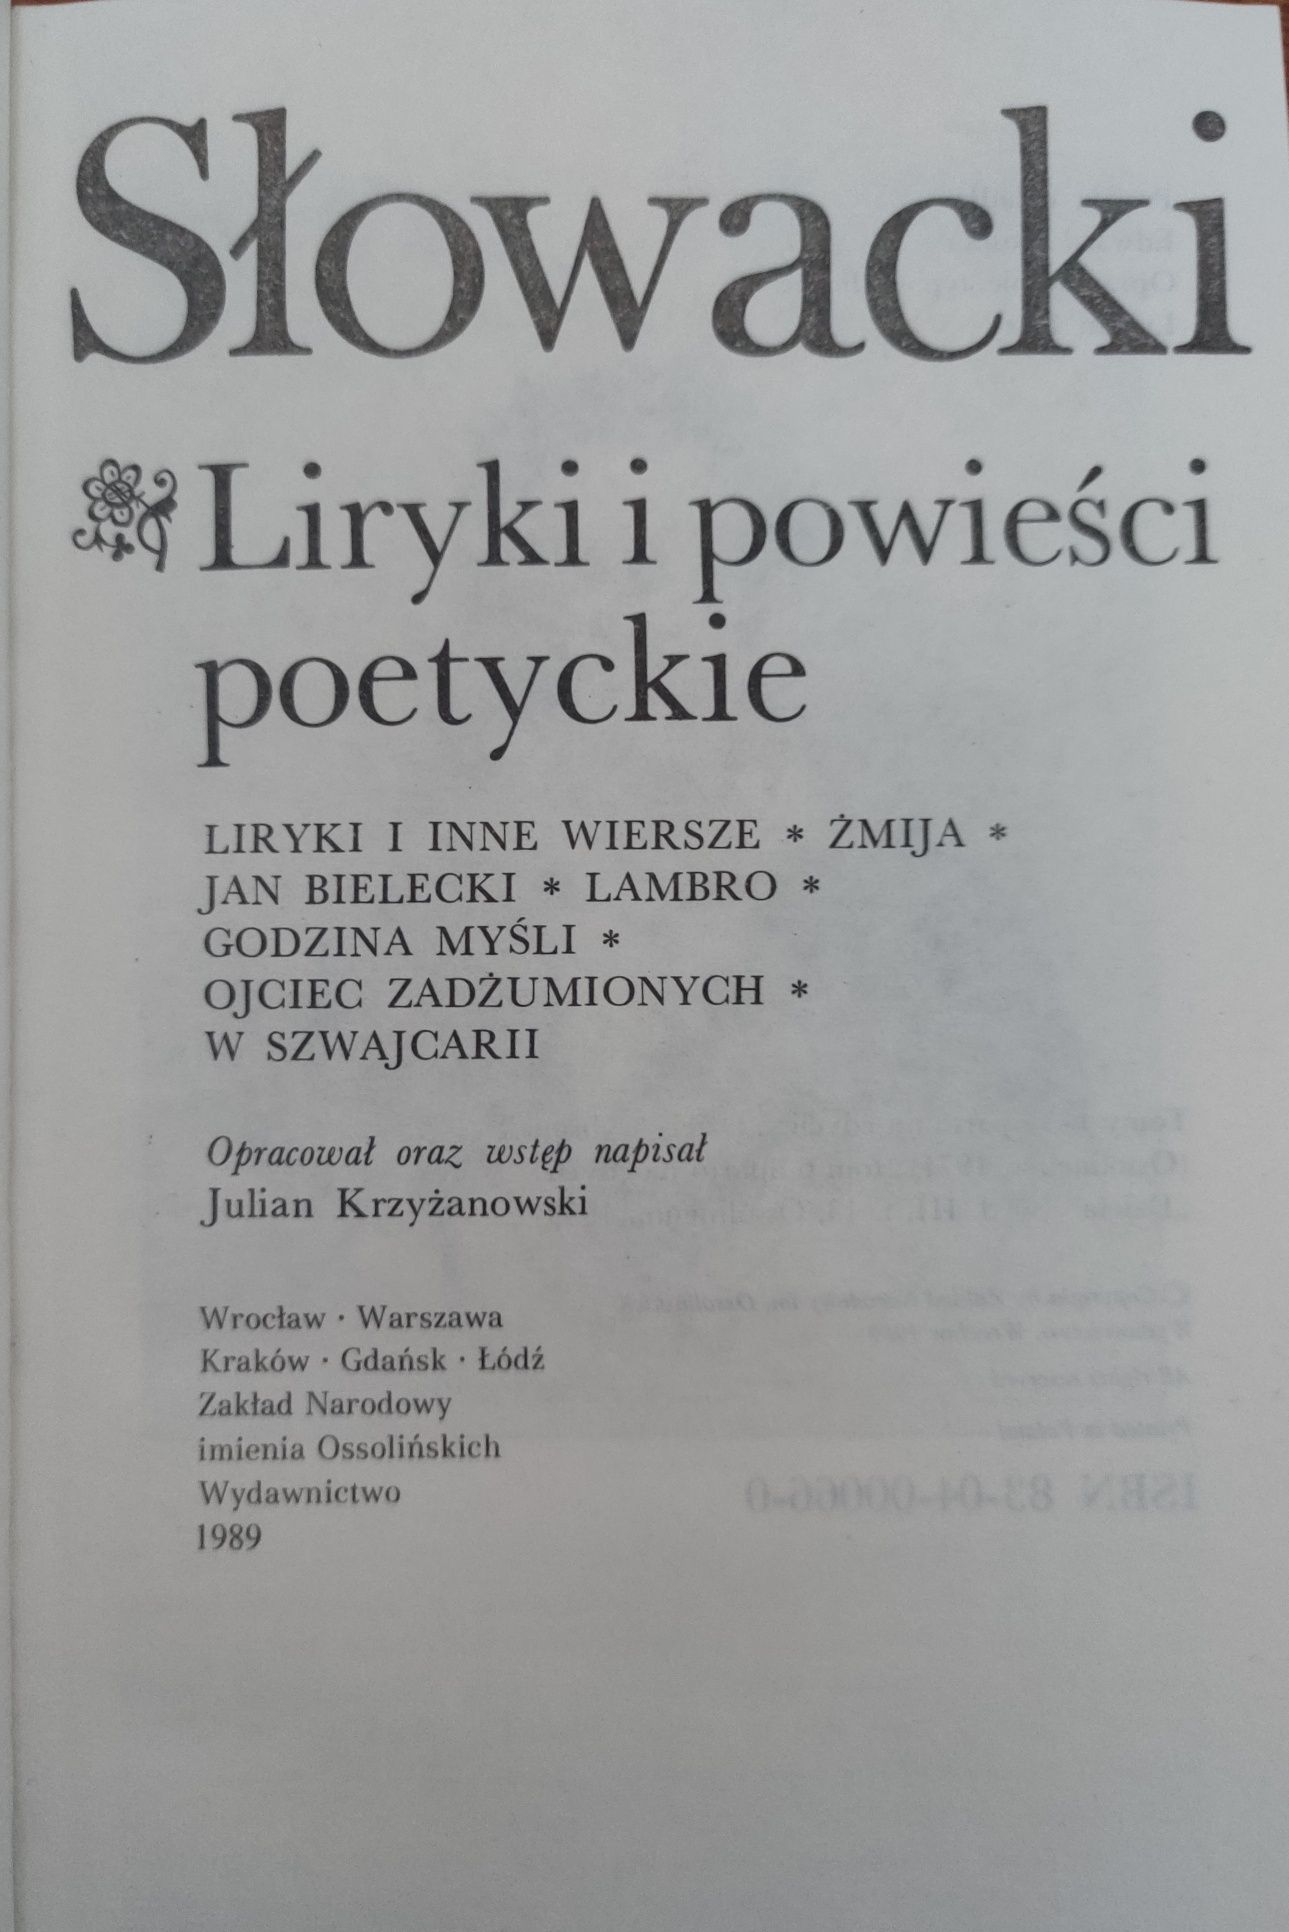 J. Słowacki, Dzieła wybrane: liryki i powieści, dramaty, listy